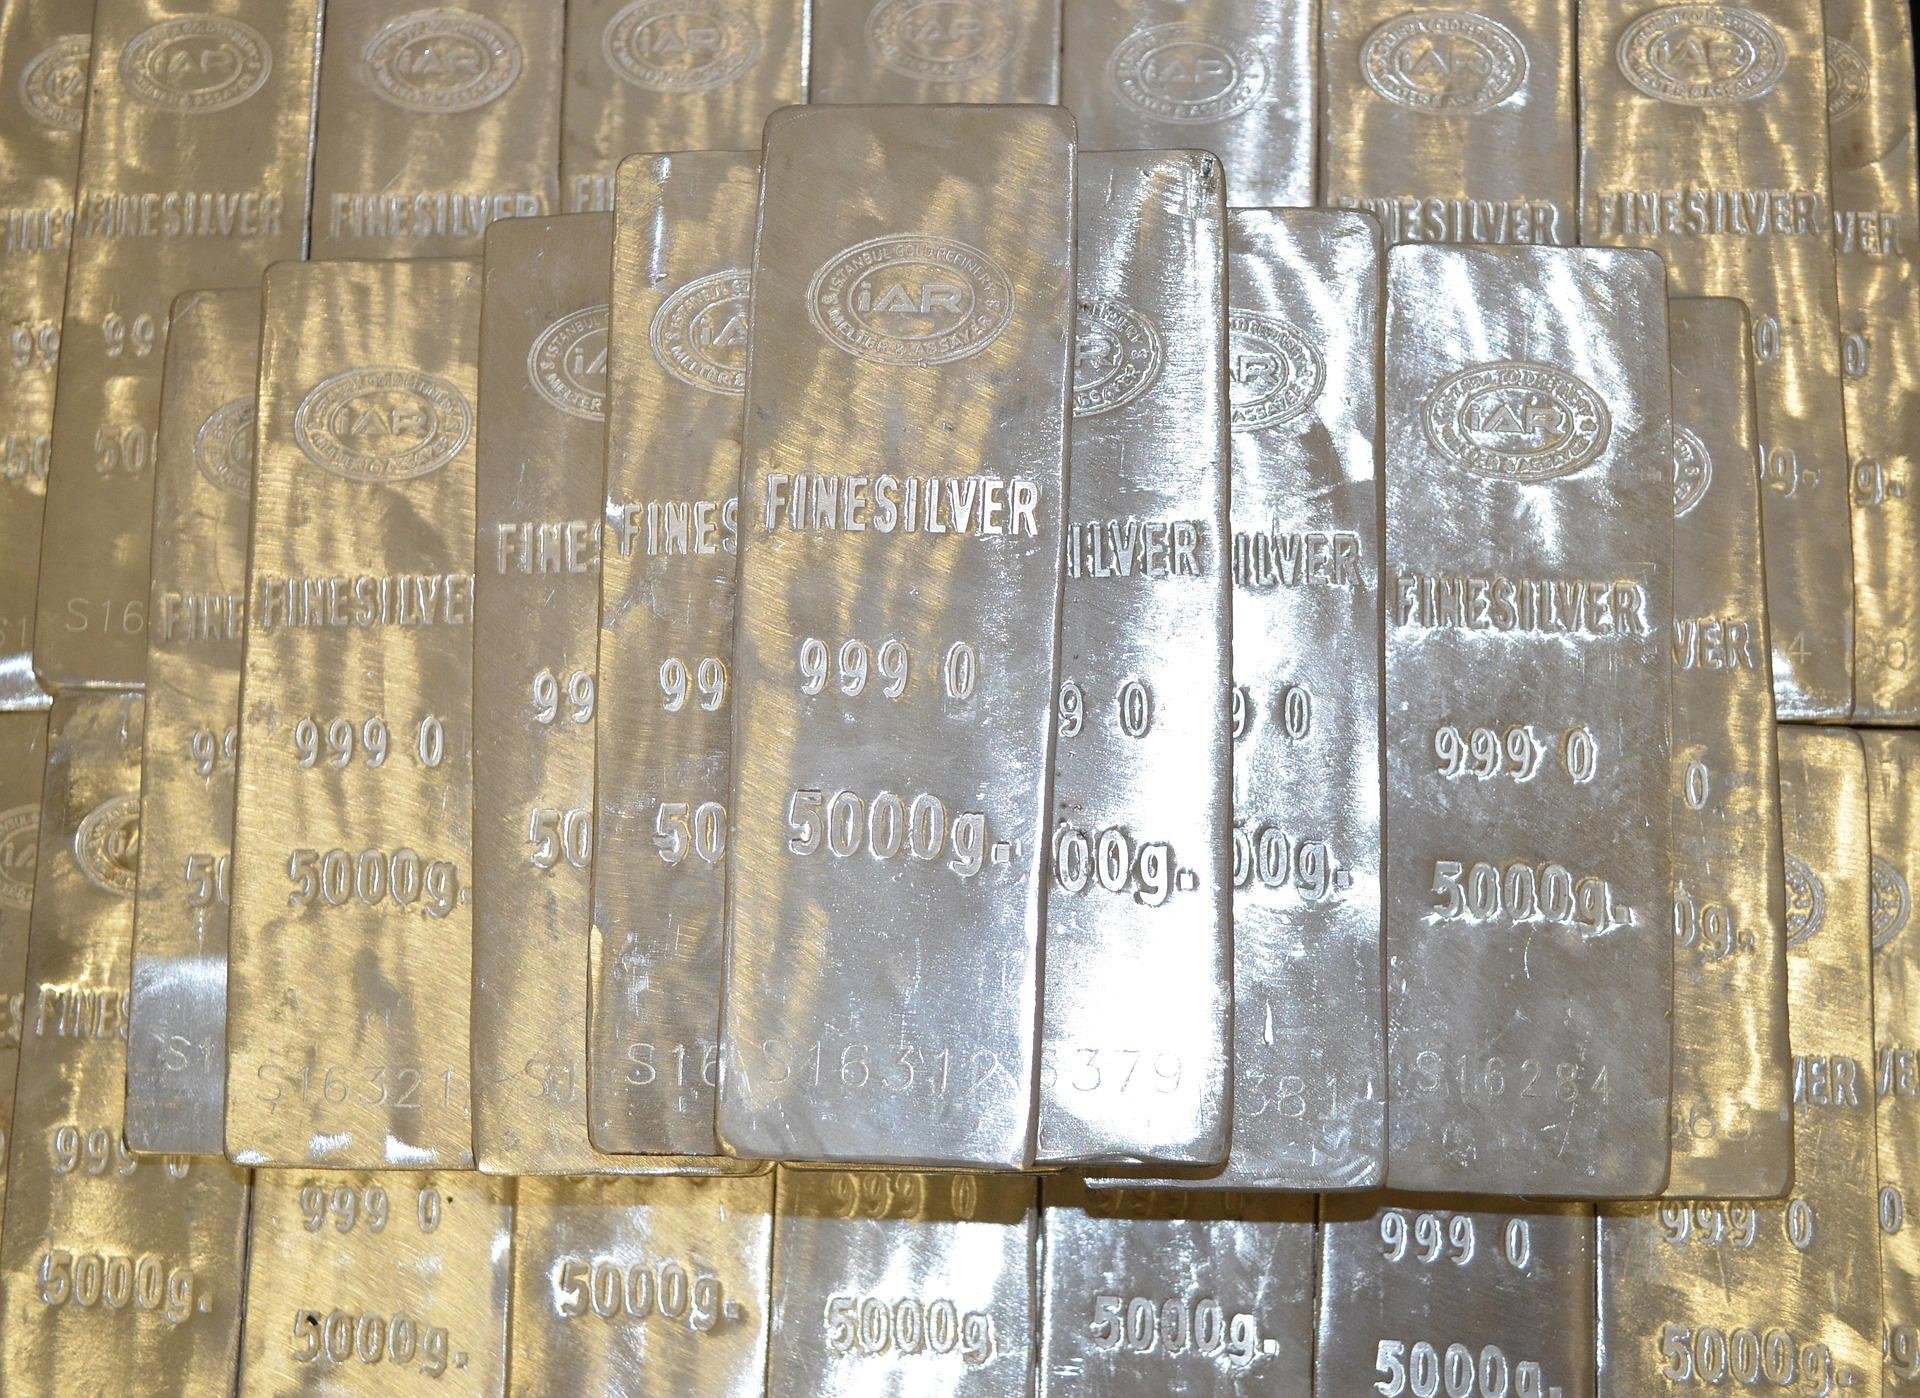 Efter guld är silver den mest investerade ädelmetallvaran. I århundraden har silver använts som valuta, för smycken och som ett långsiktigt investeringsalternativ. Olika silverbaserade instrument finns idag tillgängliga för handel och investeringar. Dessa inkluderar silverterminer, silveroptioner, silver-ETF:er eller OTC-produkter som fonder baserade på silver. Den här artikeln diskuterar handel med silverterminer – hur det fungerar, hur det vanligtvis används av investerare och vad du behöver veta innan du handlar.